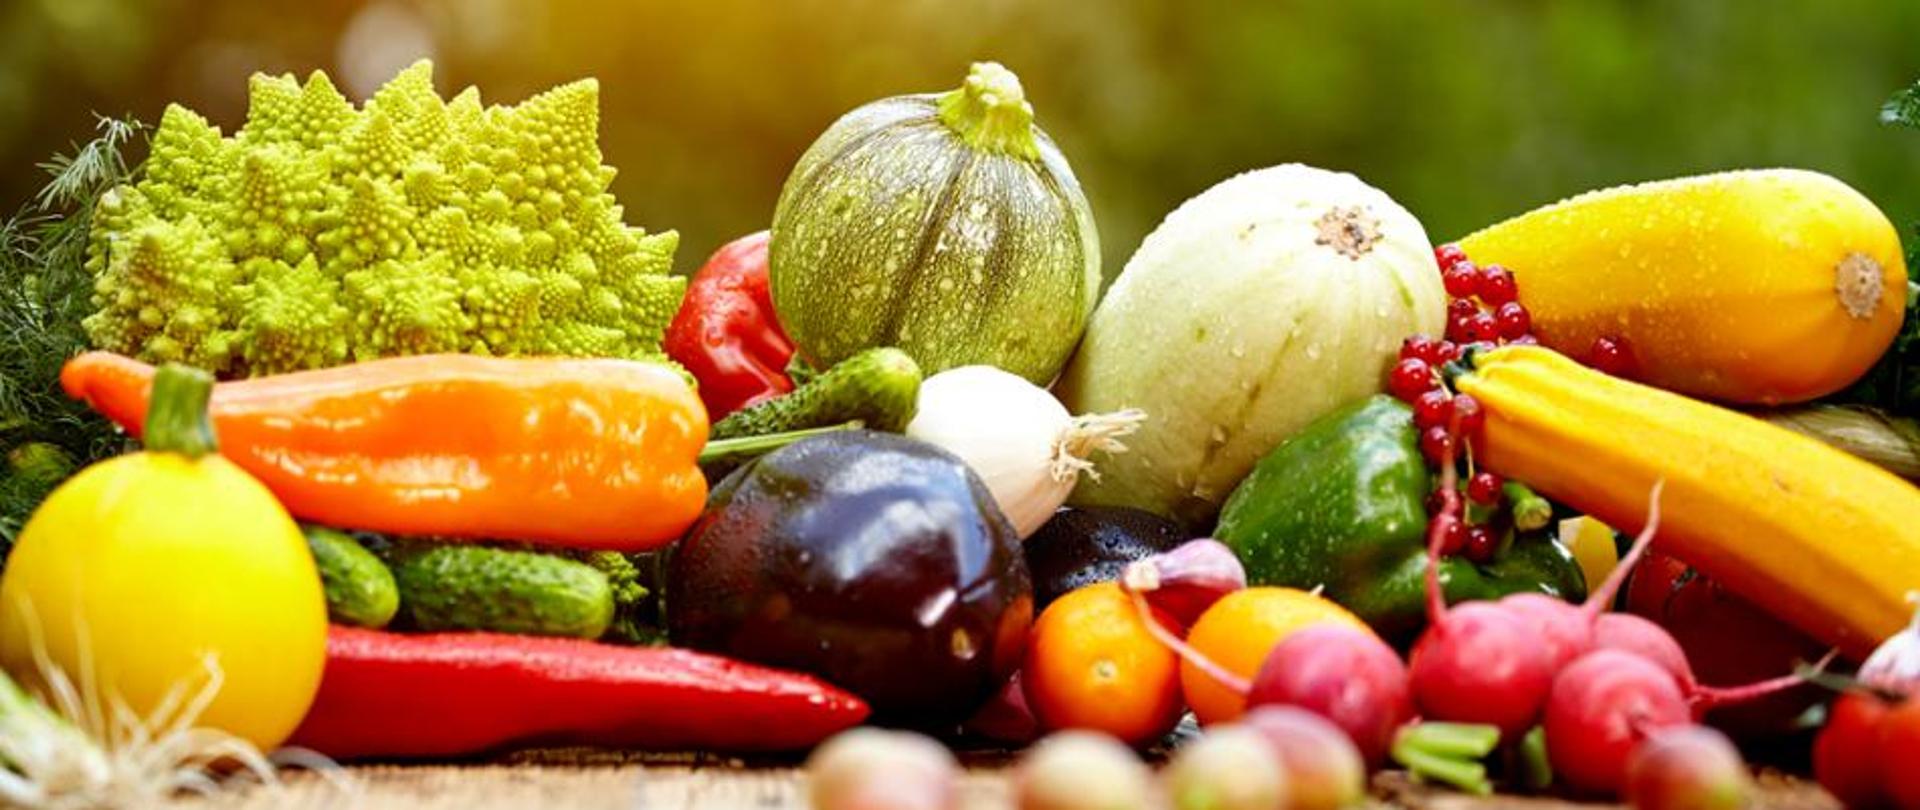 na zdjeciu przedstawione są warzywa i owoce miedzy innymi papryka, rzodkiewki, cukinie, bakłarzan, ogórki, czosnek, por